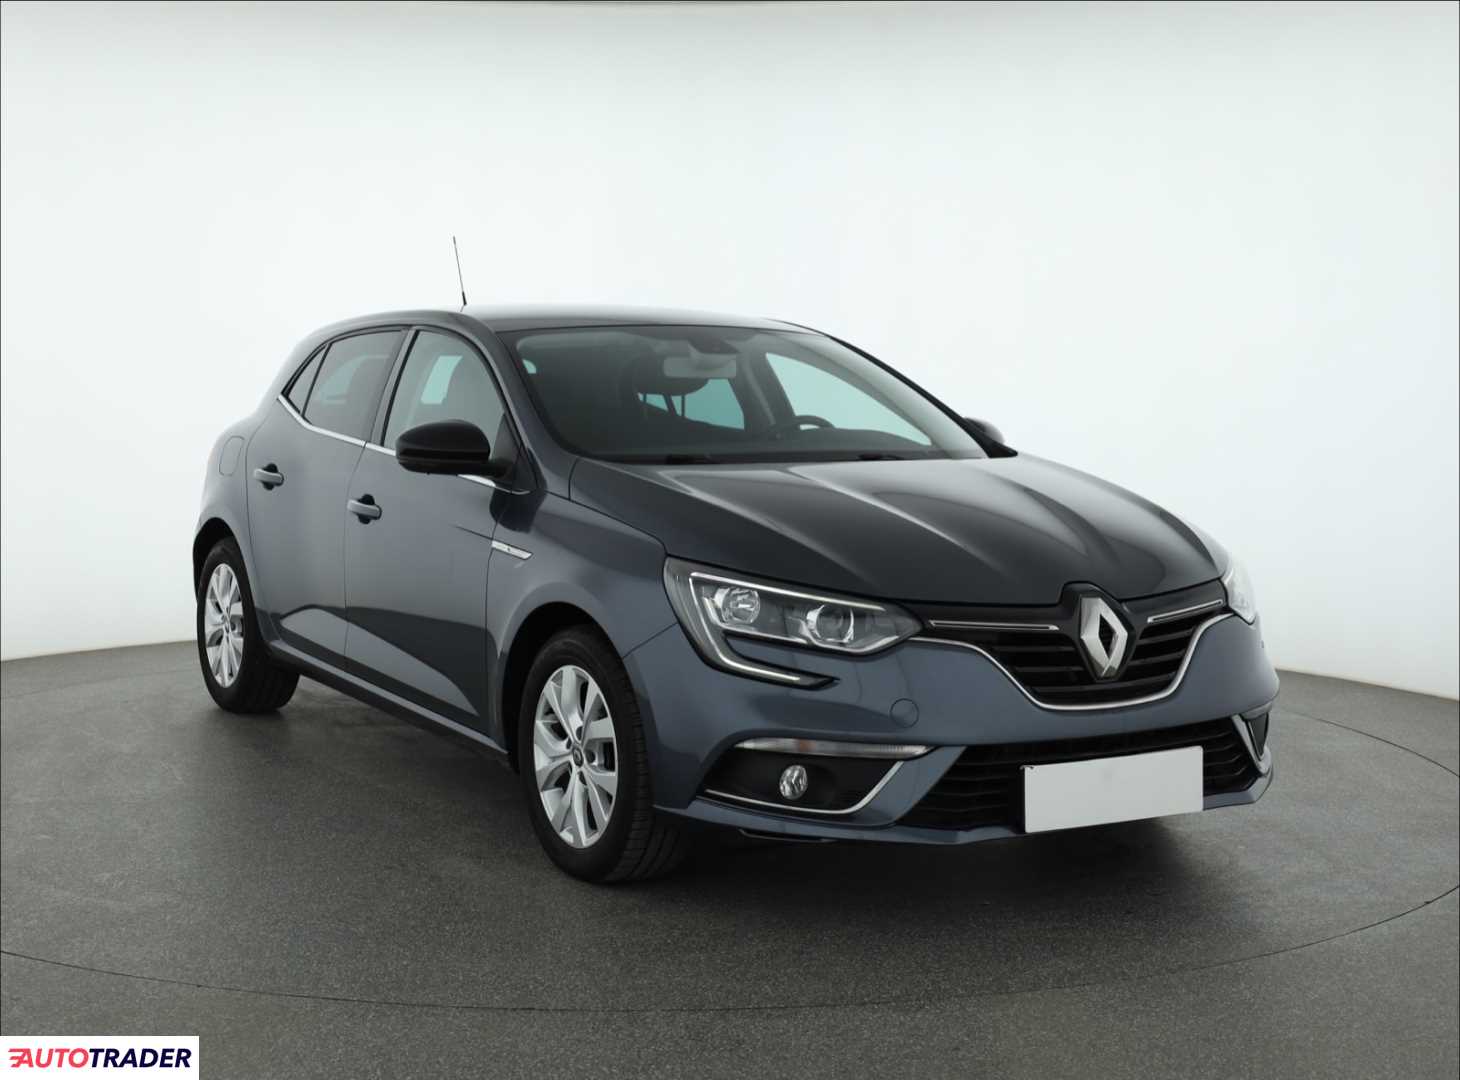 Renault Megane 2018 1.3 138 KM